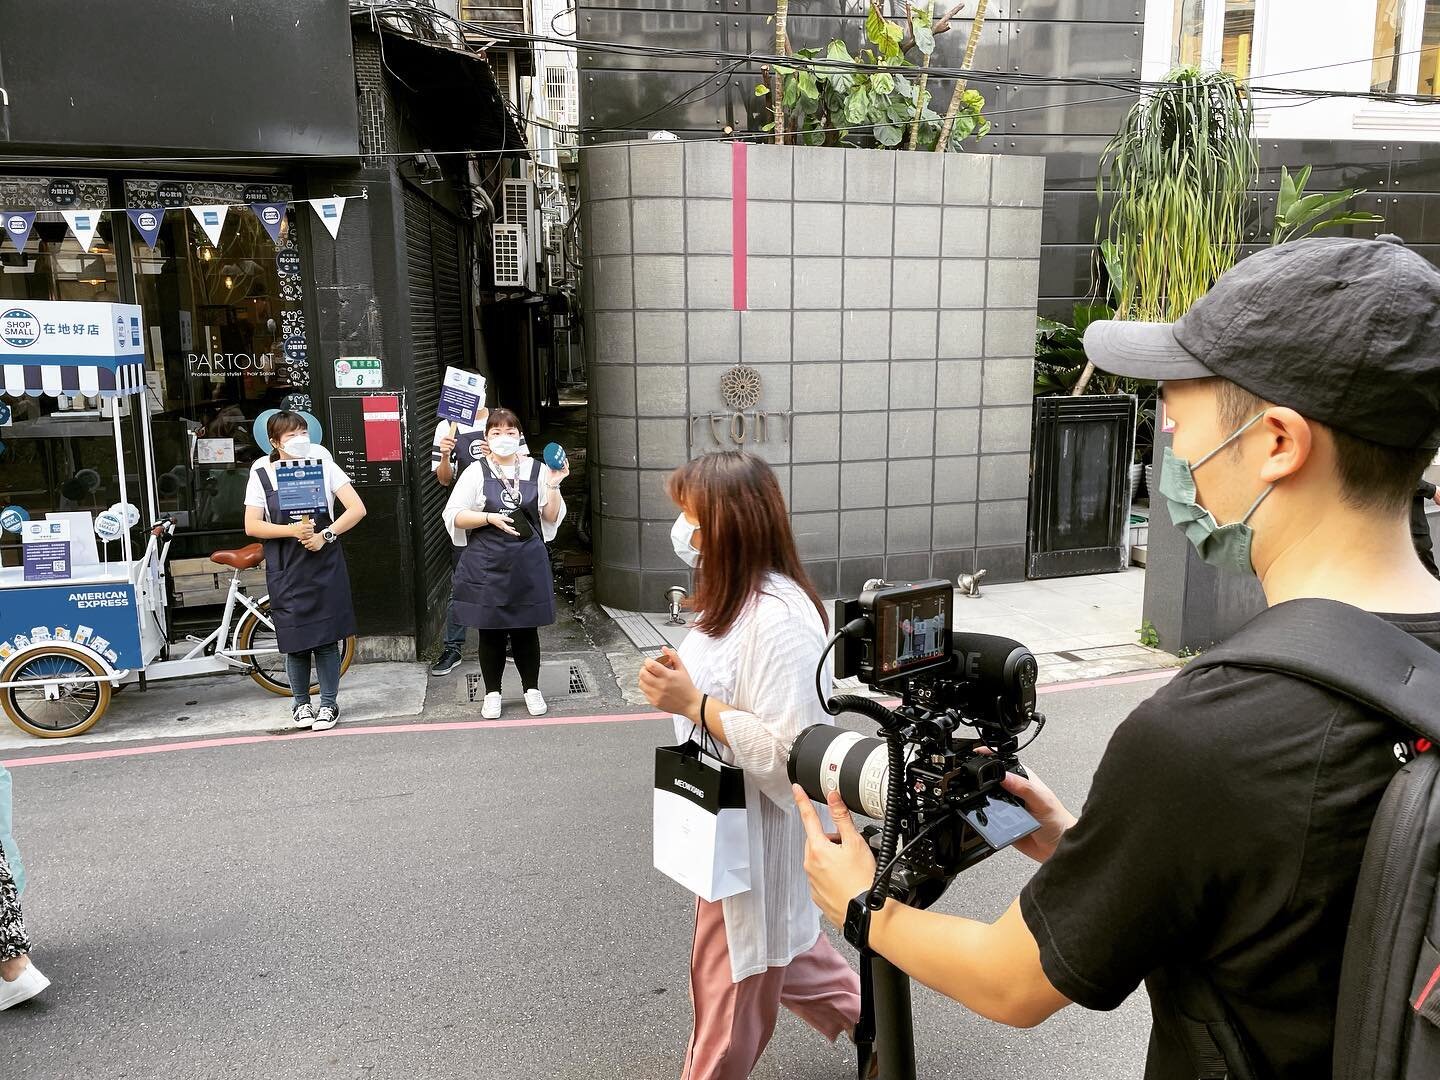 感謝賞賜好天氣，今日順利完成！
#event #aftermovie #filming #sony #sonya7iii #sonya7siii #taipeitravel #taiwan #filmproduction #ronins